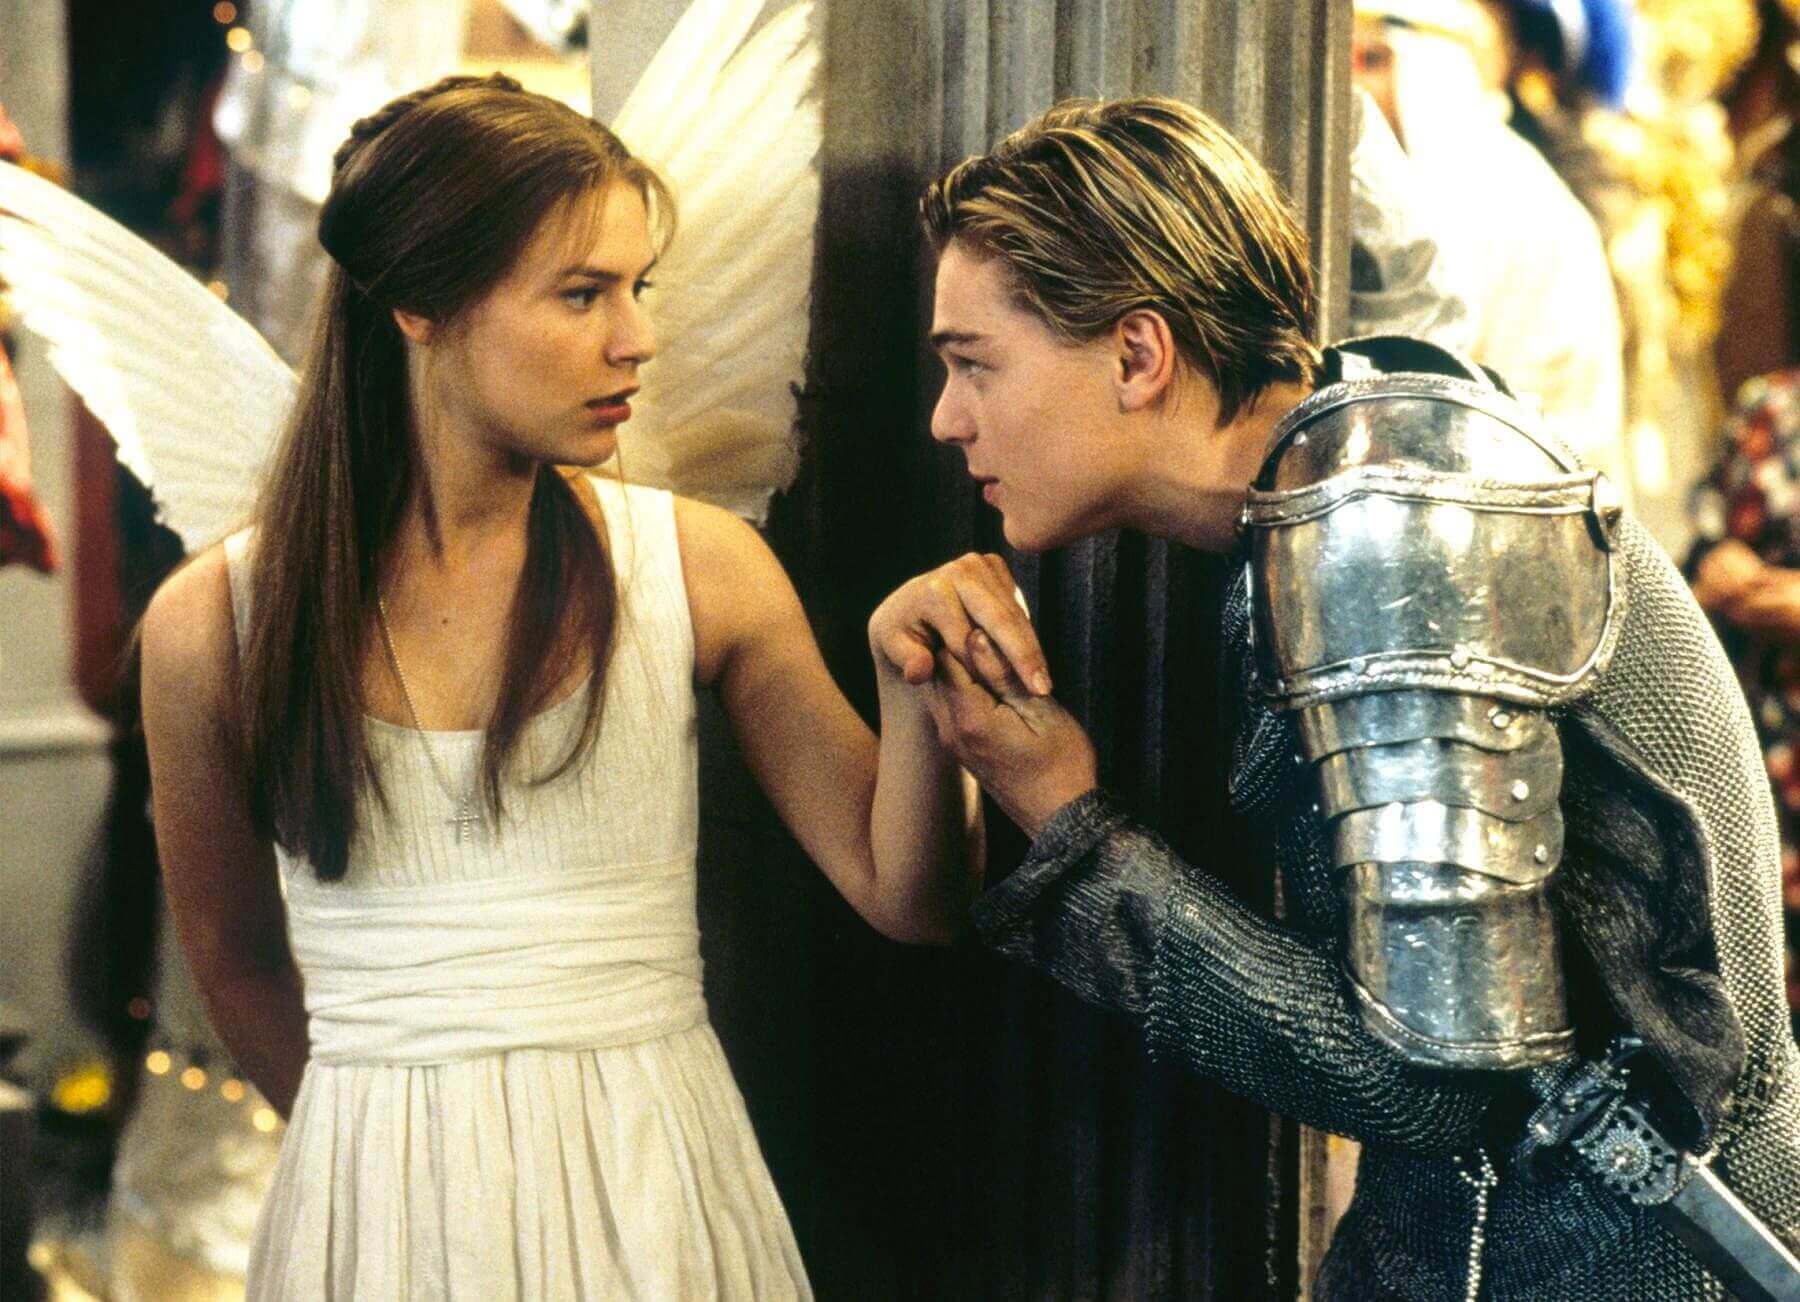 Romeu e Julieta